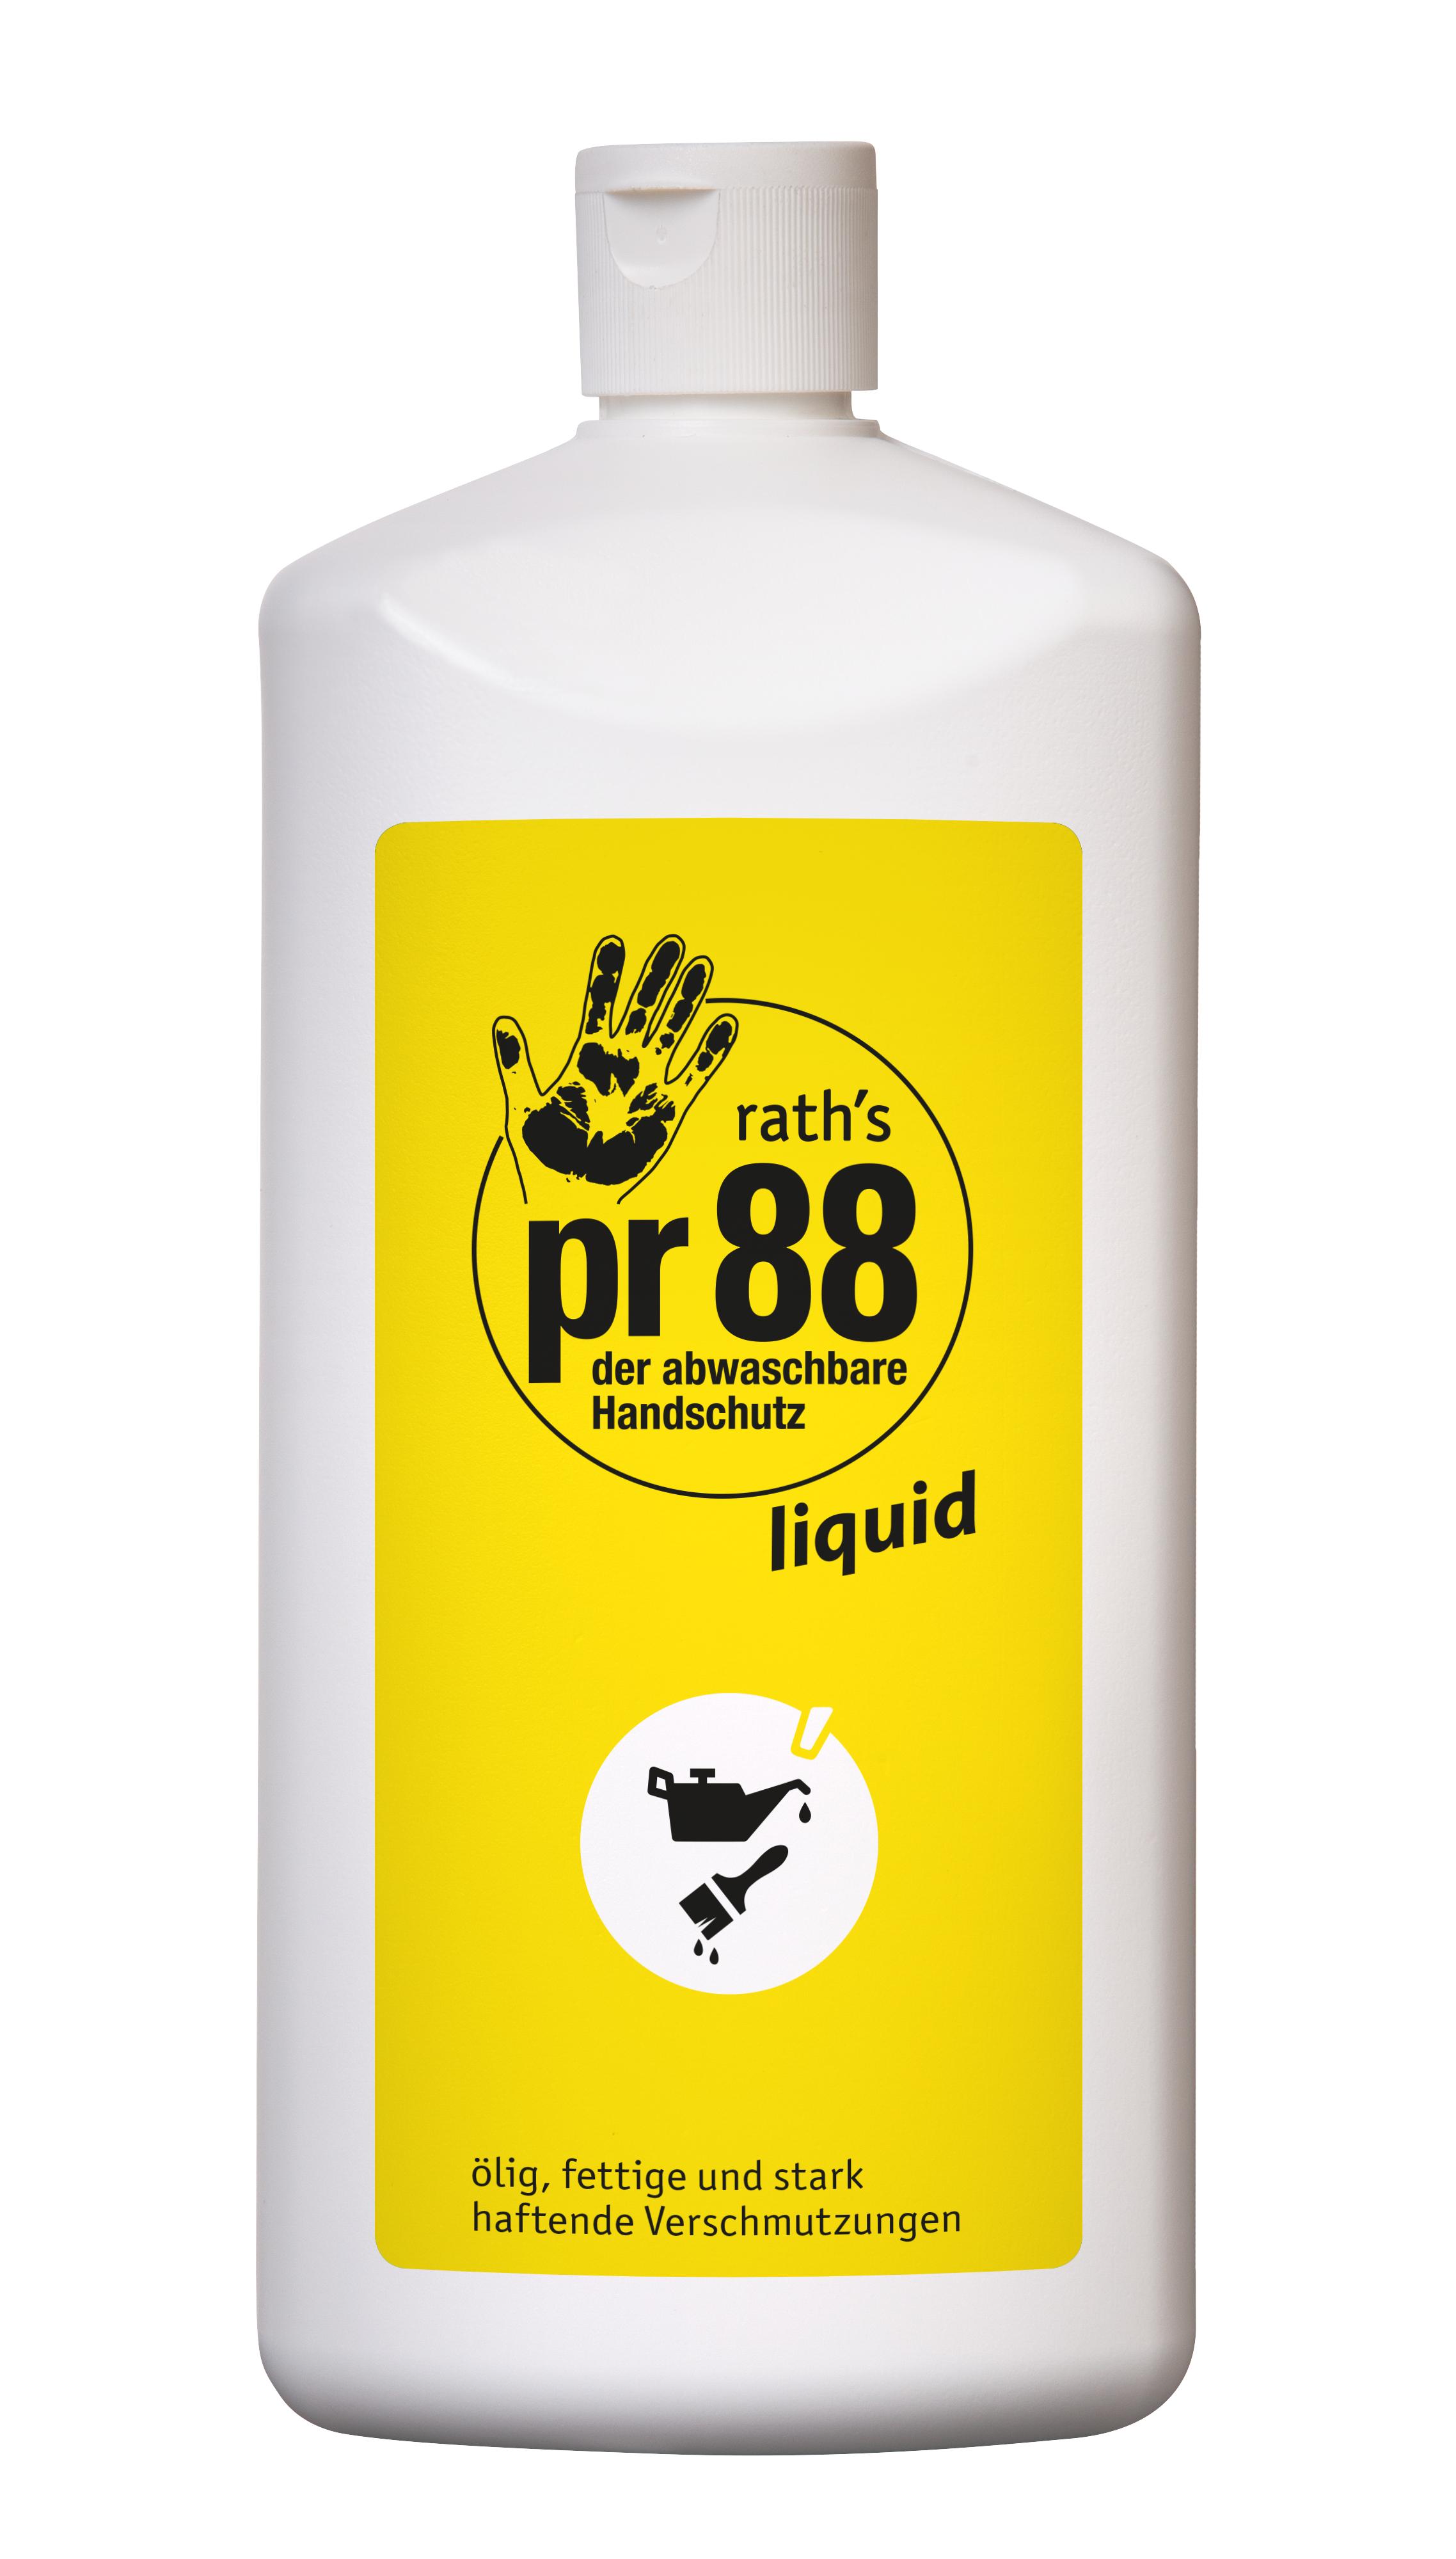 Rath's pr88 Liquid Hautschutzfluid 1,0 L | 1000 ml flüssiger Hautschutz Hände